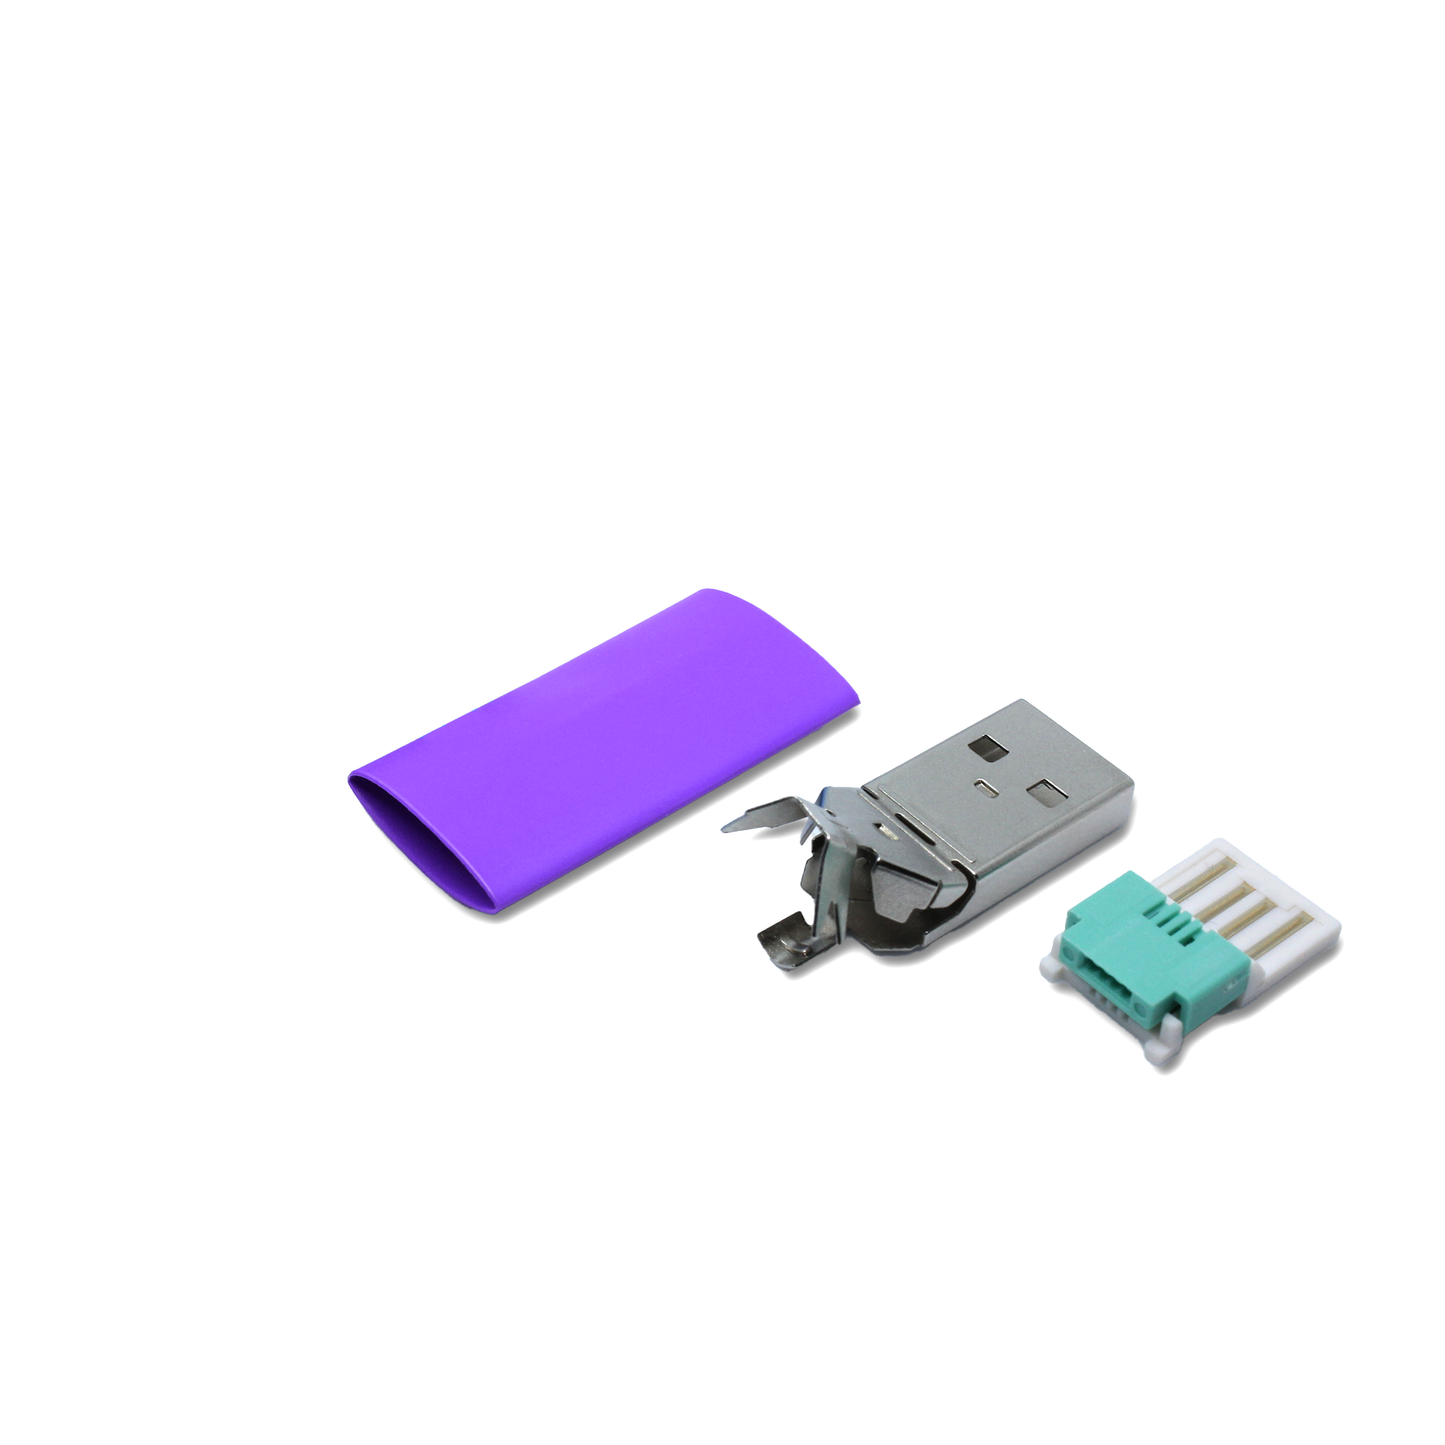 Einzelteile USB A Stecker in lila, mit dem Ersatzteil kann ein USB 2.0 Kabel lötfrei (crimpen) repariert werden